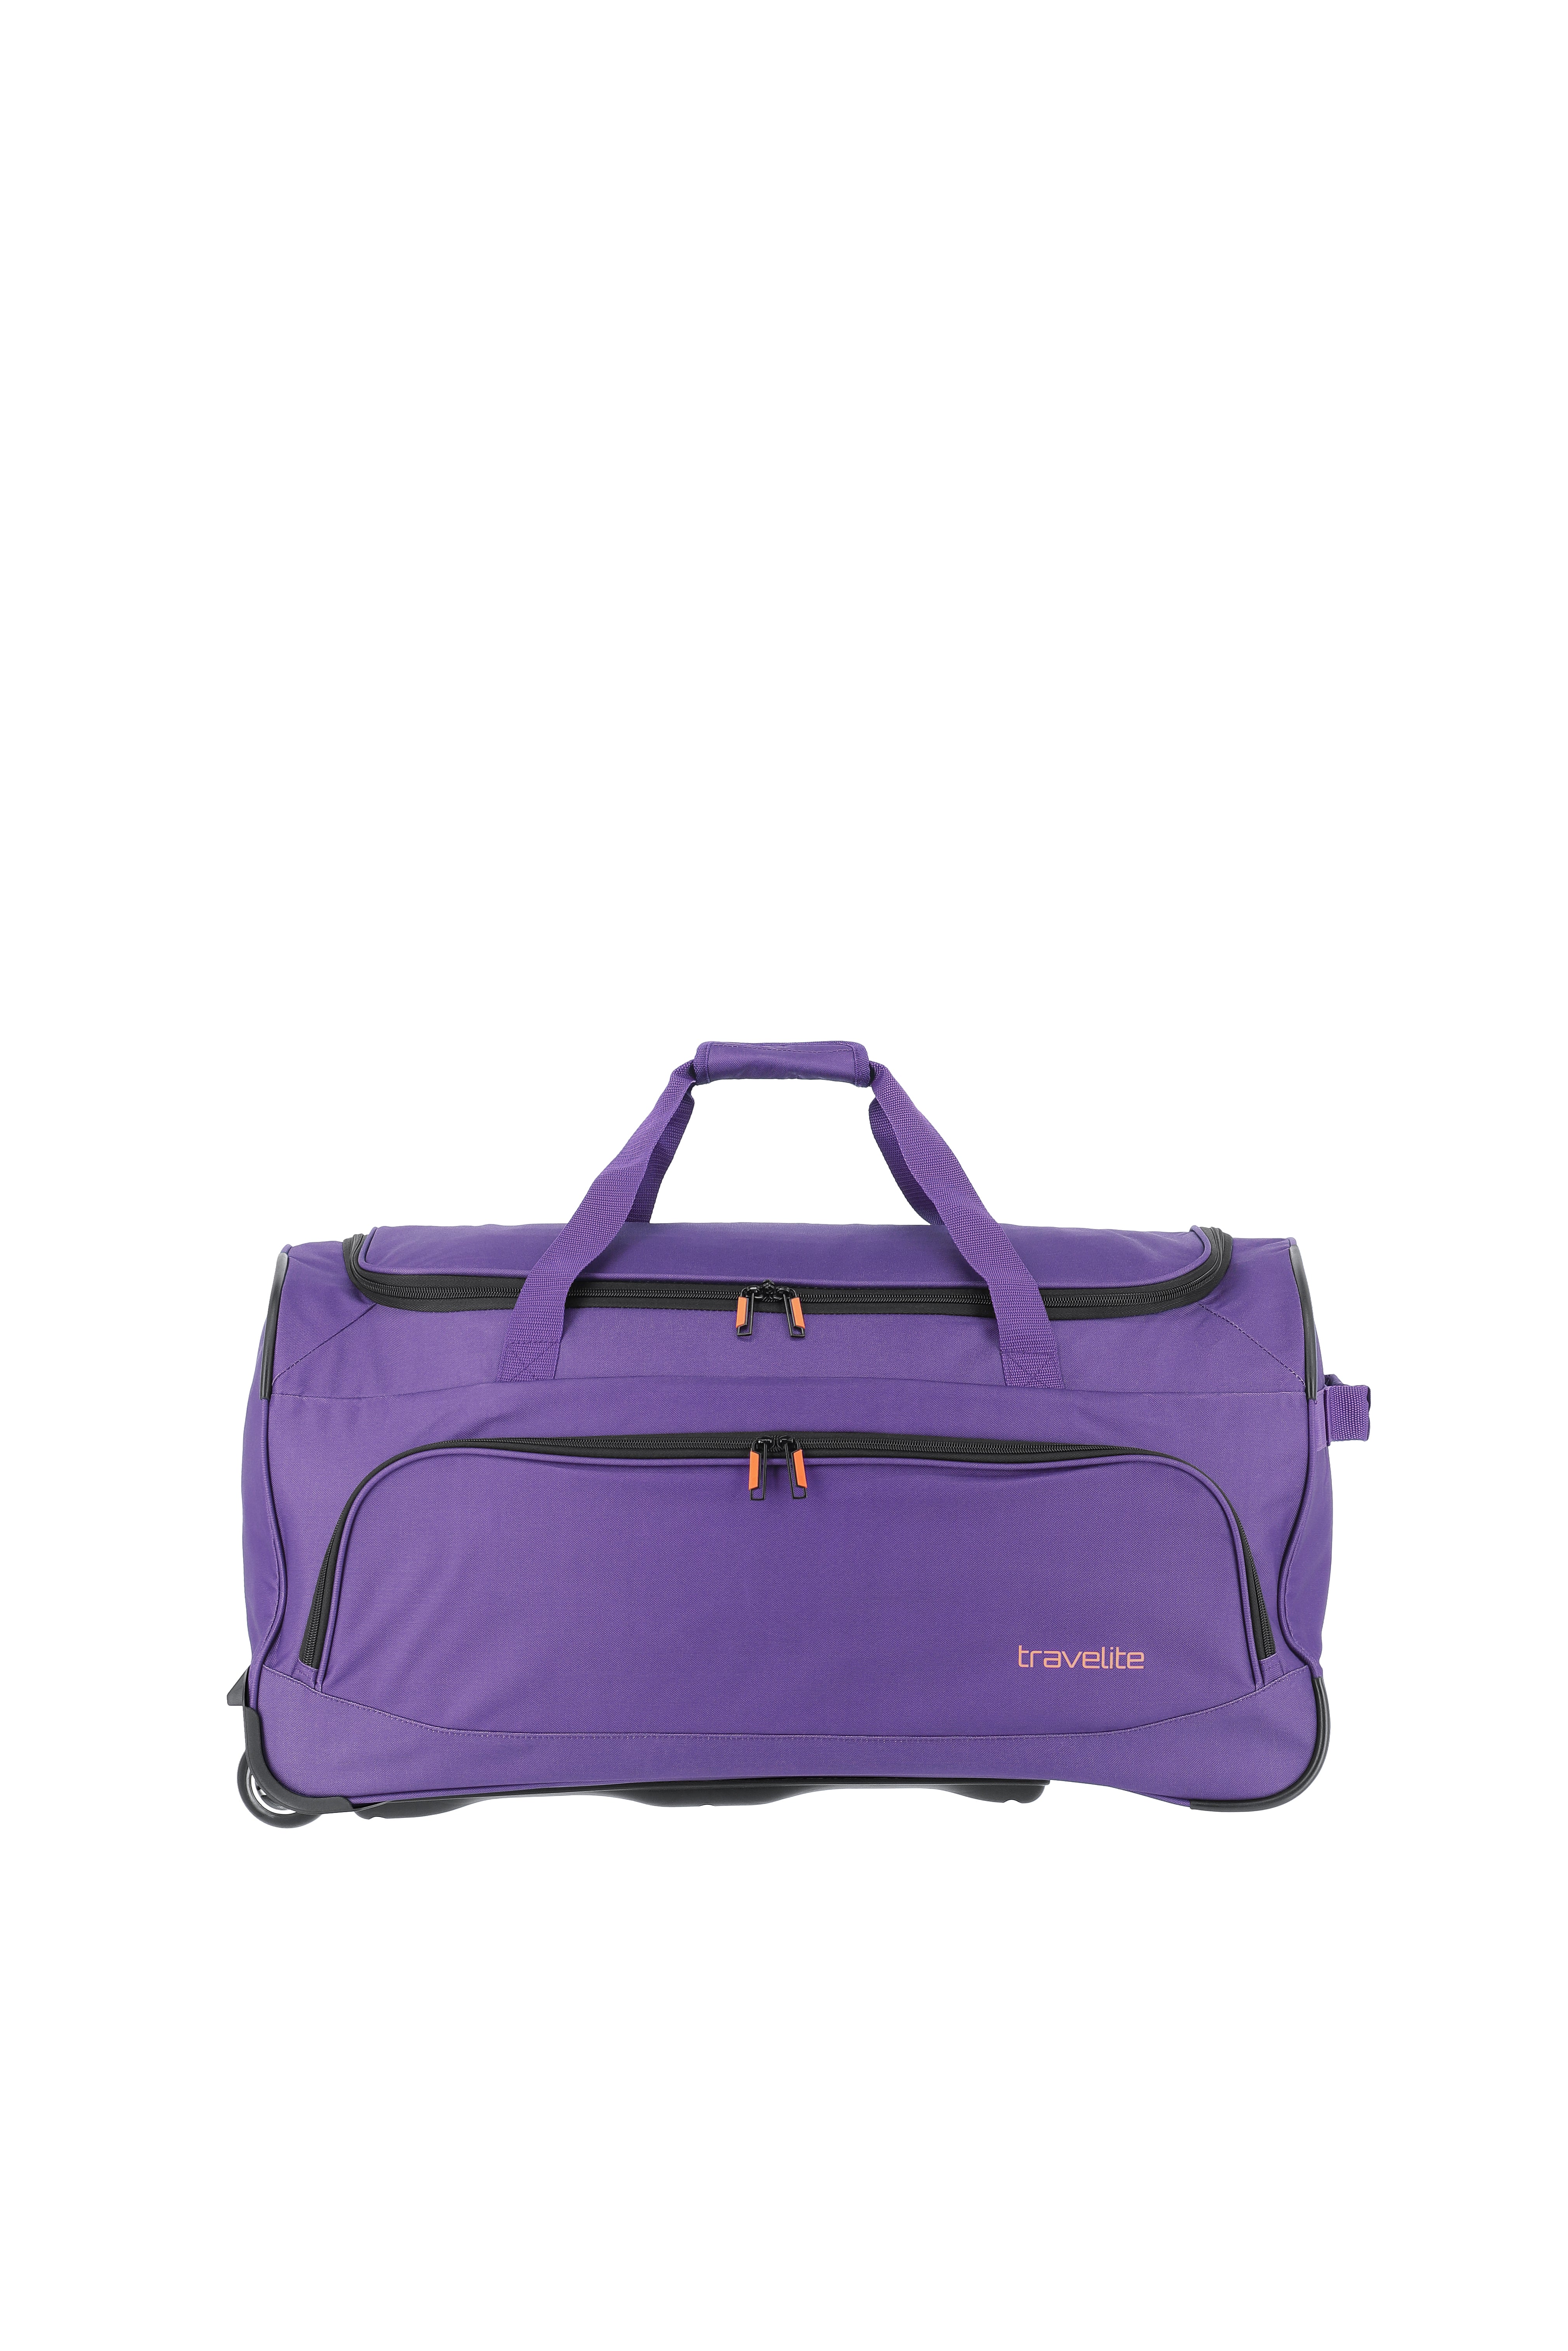 Basics Fresh Trolley Travel Bag lilac